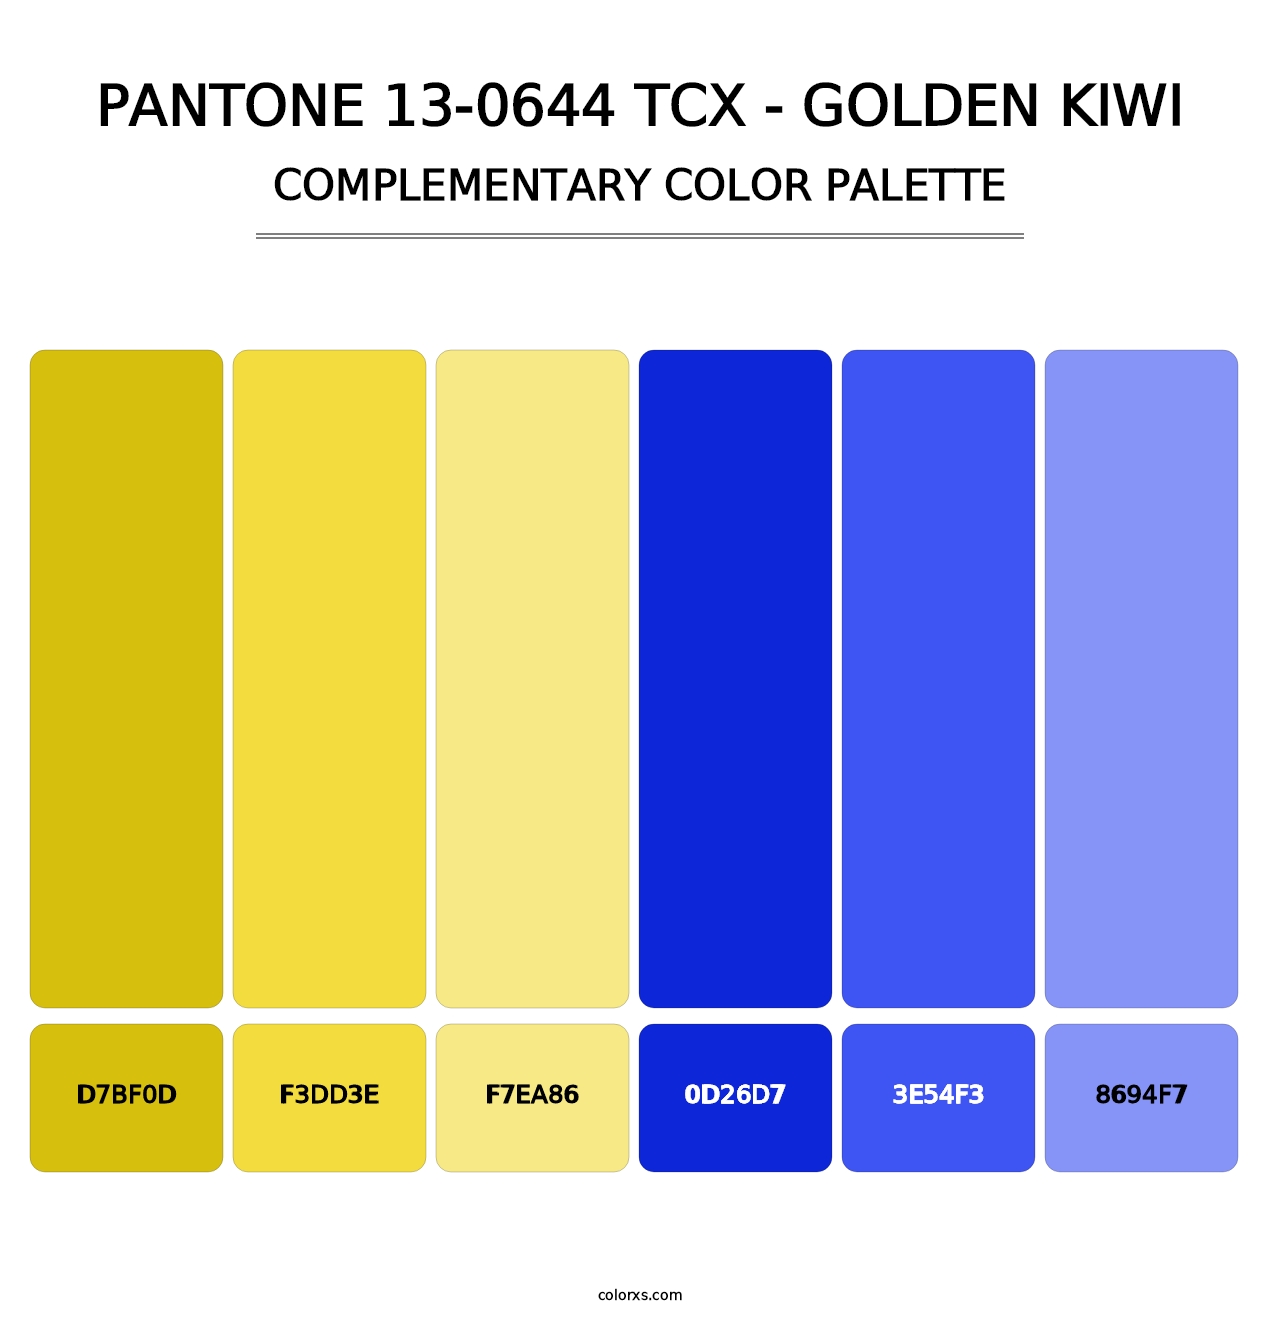 PANTONE 13-0644 TCX - Golden Kiwi - Complementary Color Palette